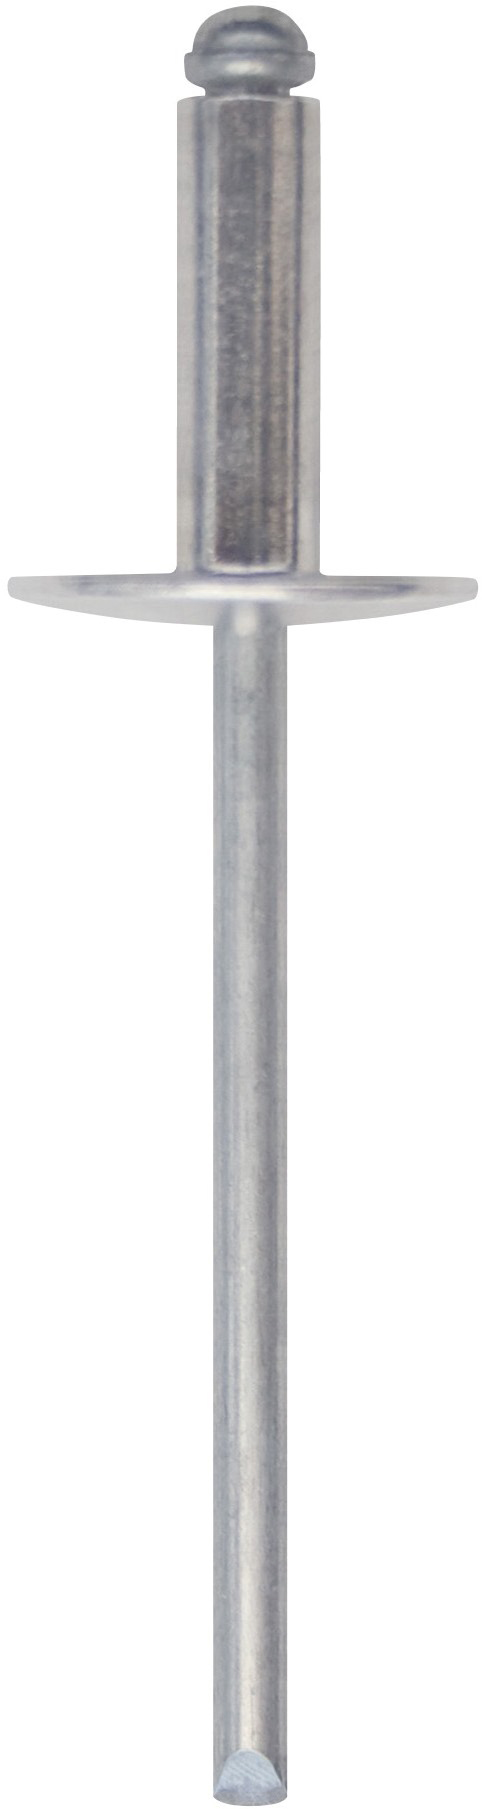 Cod. 0300104801000 - RIVEX Rivetto in alluminio con testa larga